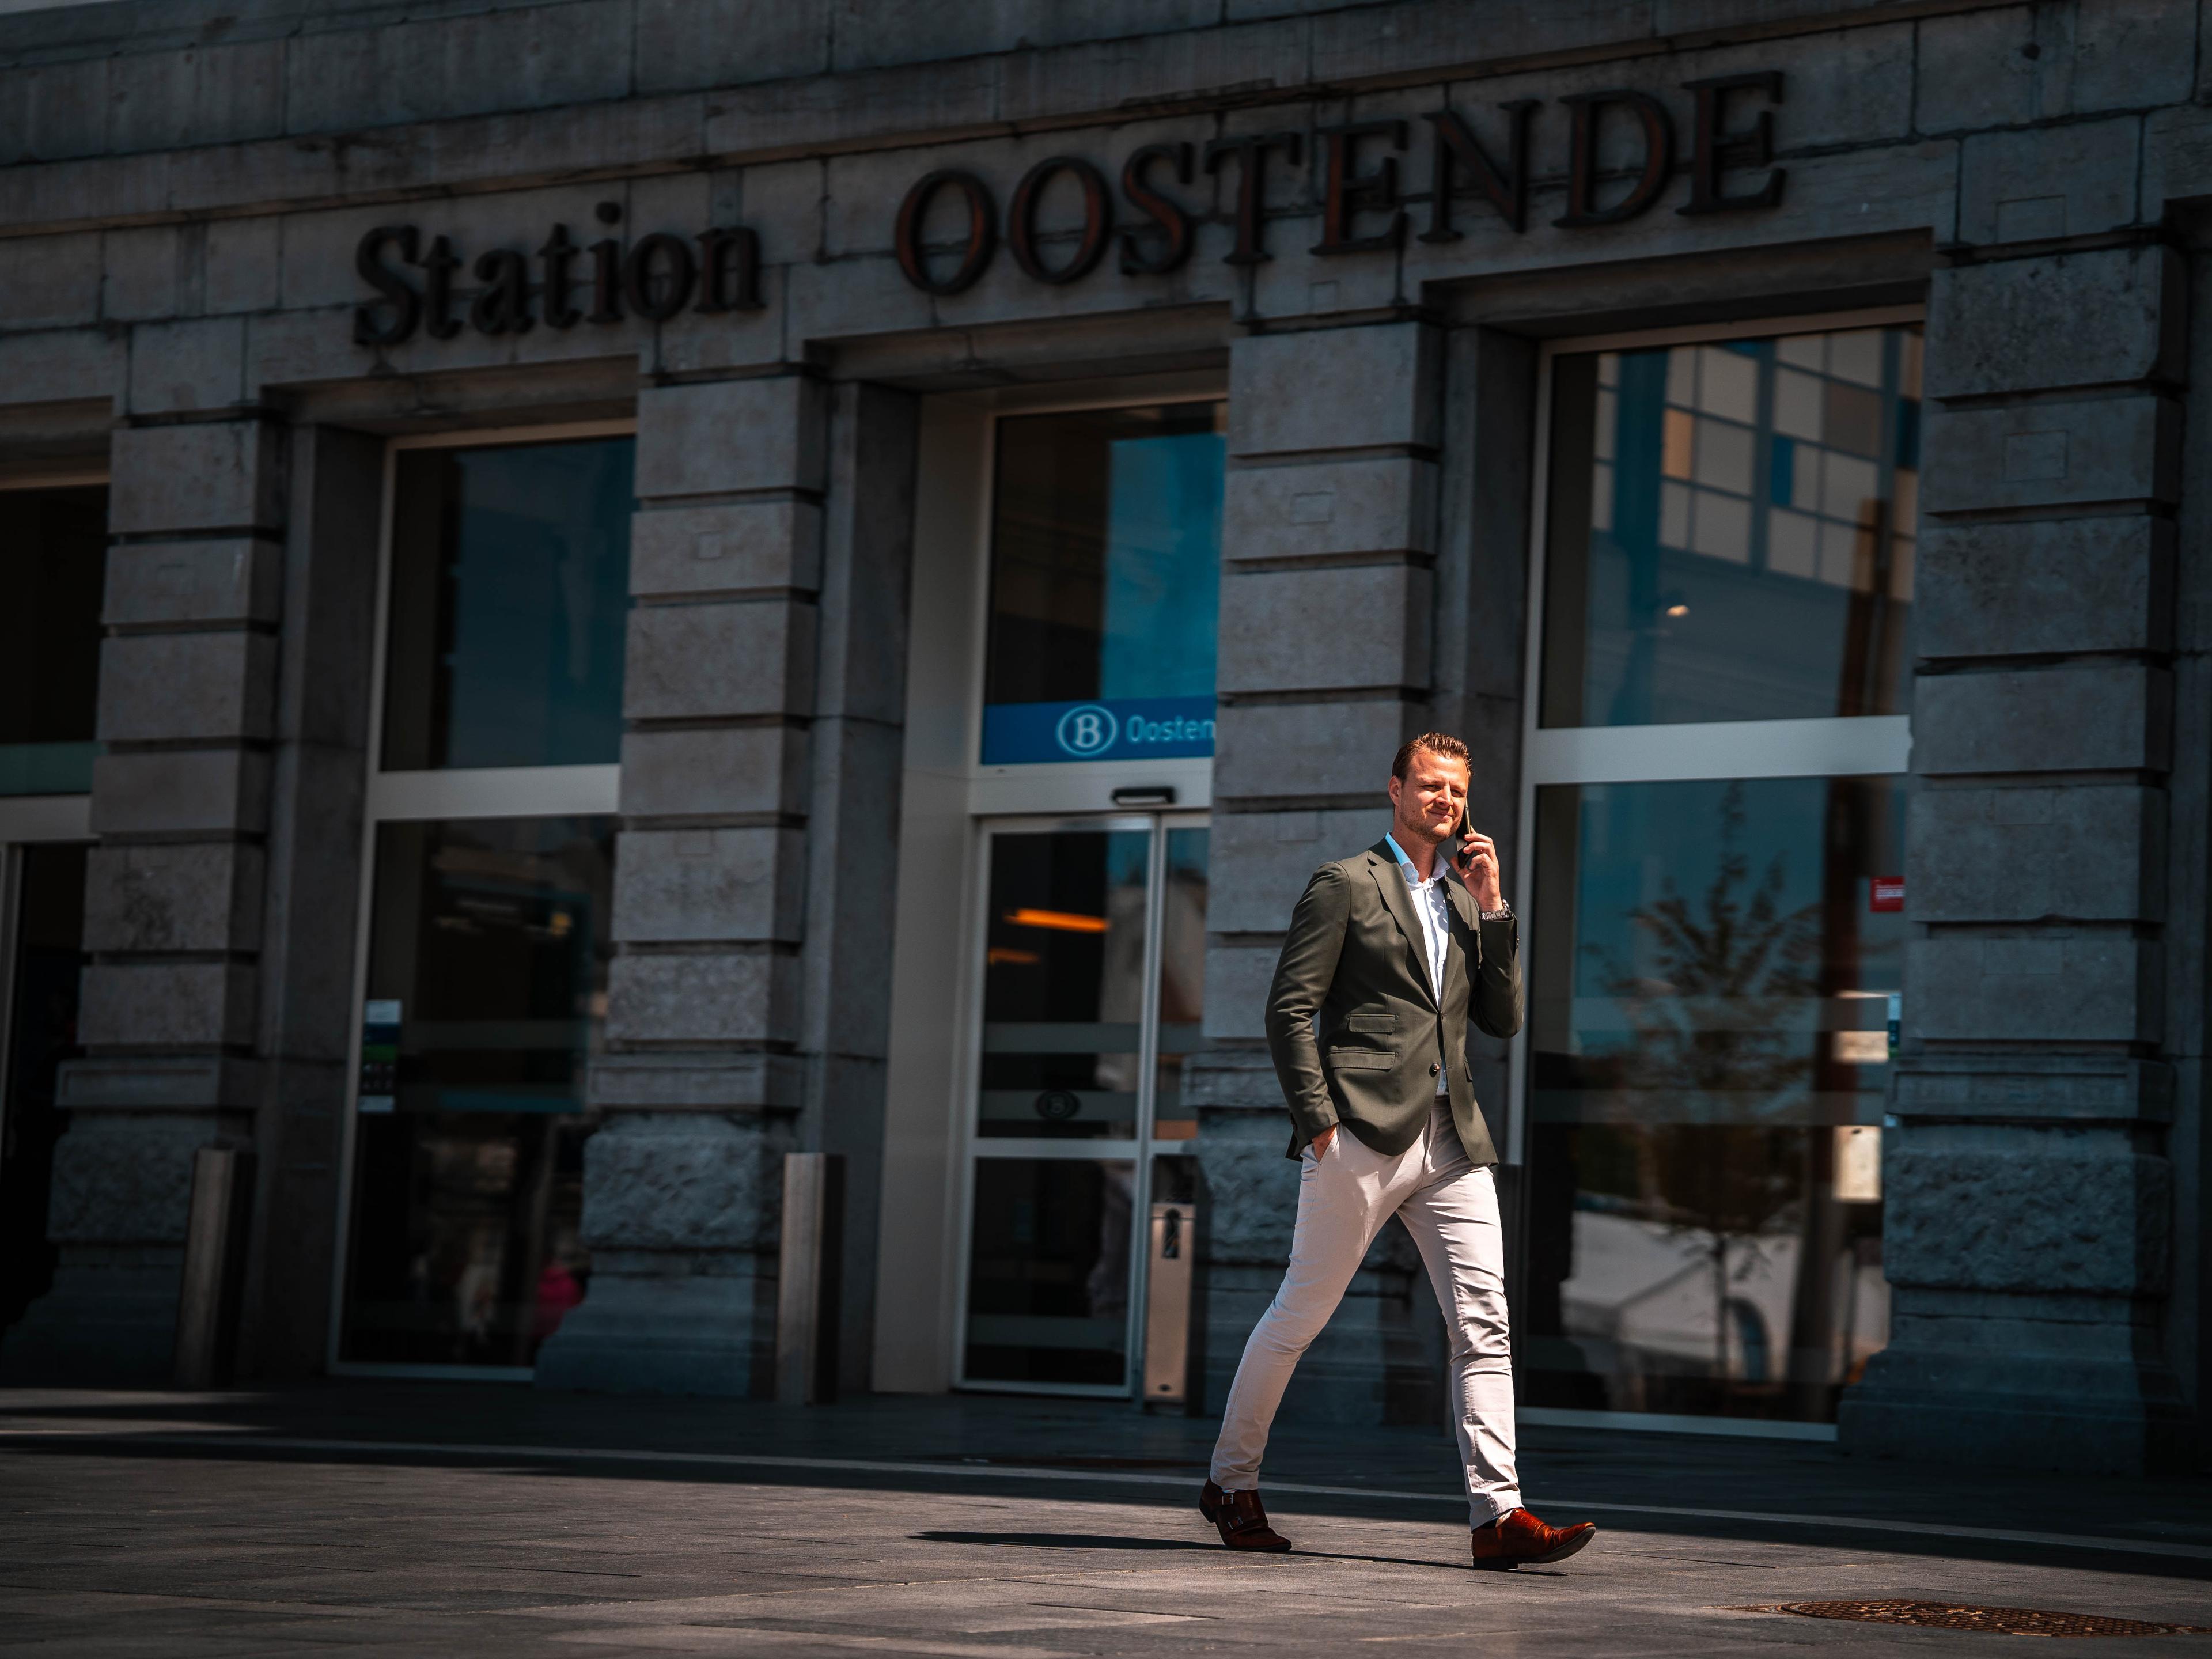 Zaakvoerder met gsm in hand voor station Oostende.